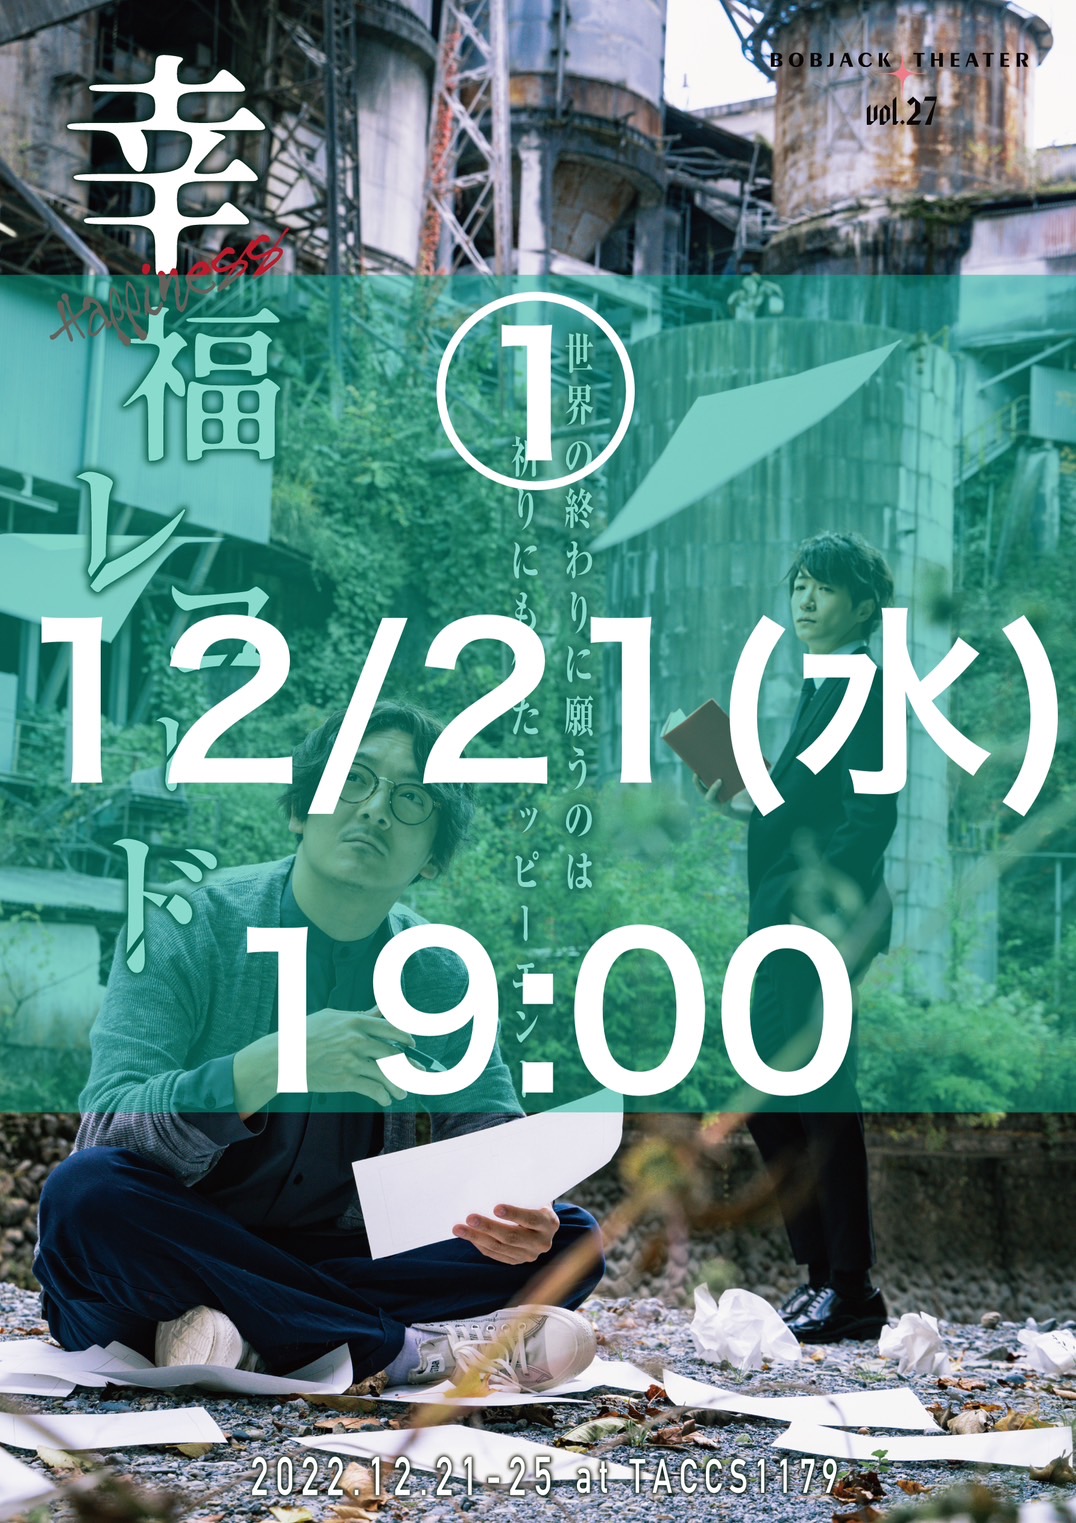 _01【 12/21(水)19時 】Bobjack Theater『幸福レコード2022』